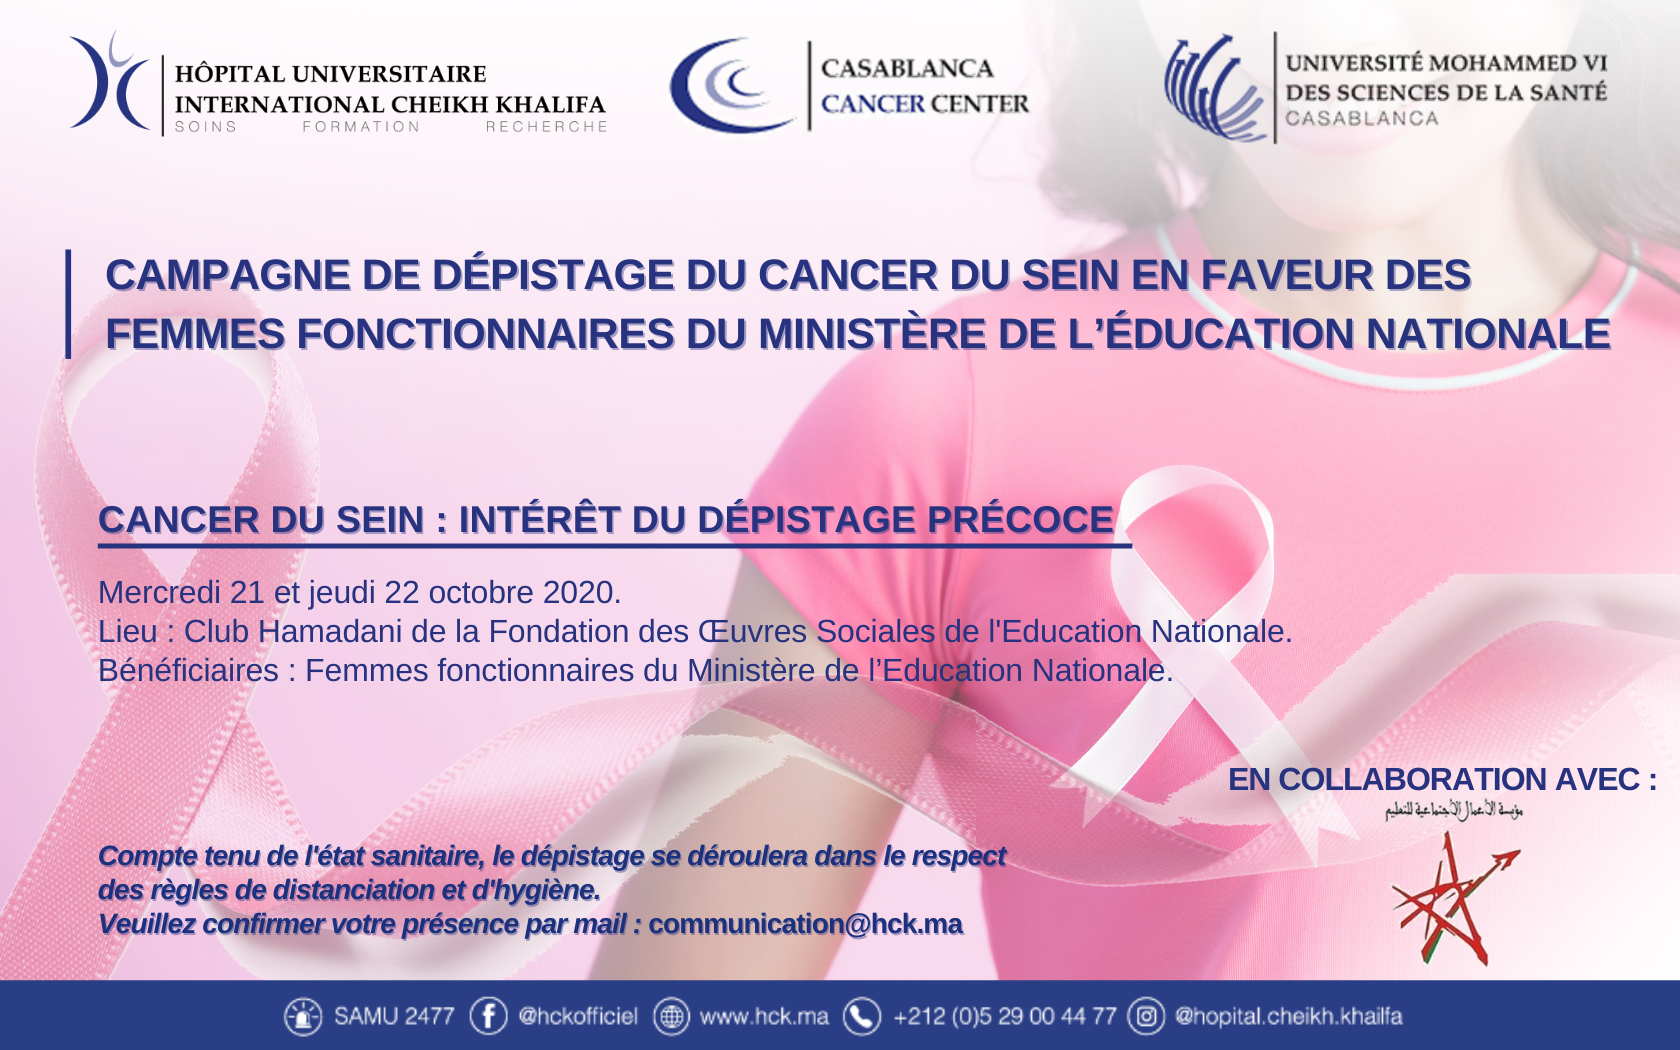 CAMPAGNE DE DEPISTAGE DU CANCER DU SEIN AU PROFIT DES FEMMES FONCTIONNAIRES DU MINISTERE DE L'EDUCATION NATIONALE